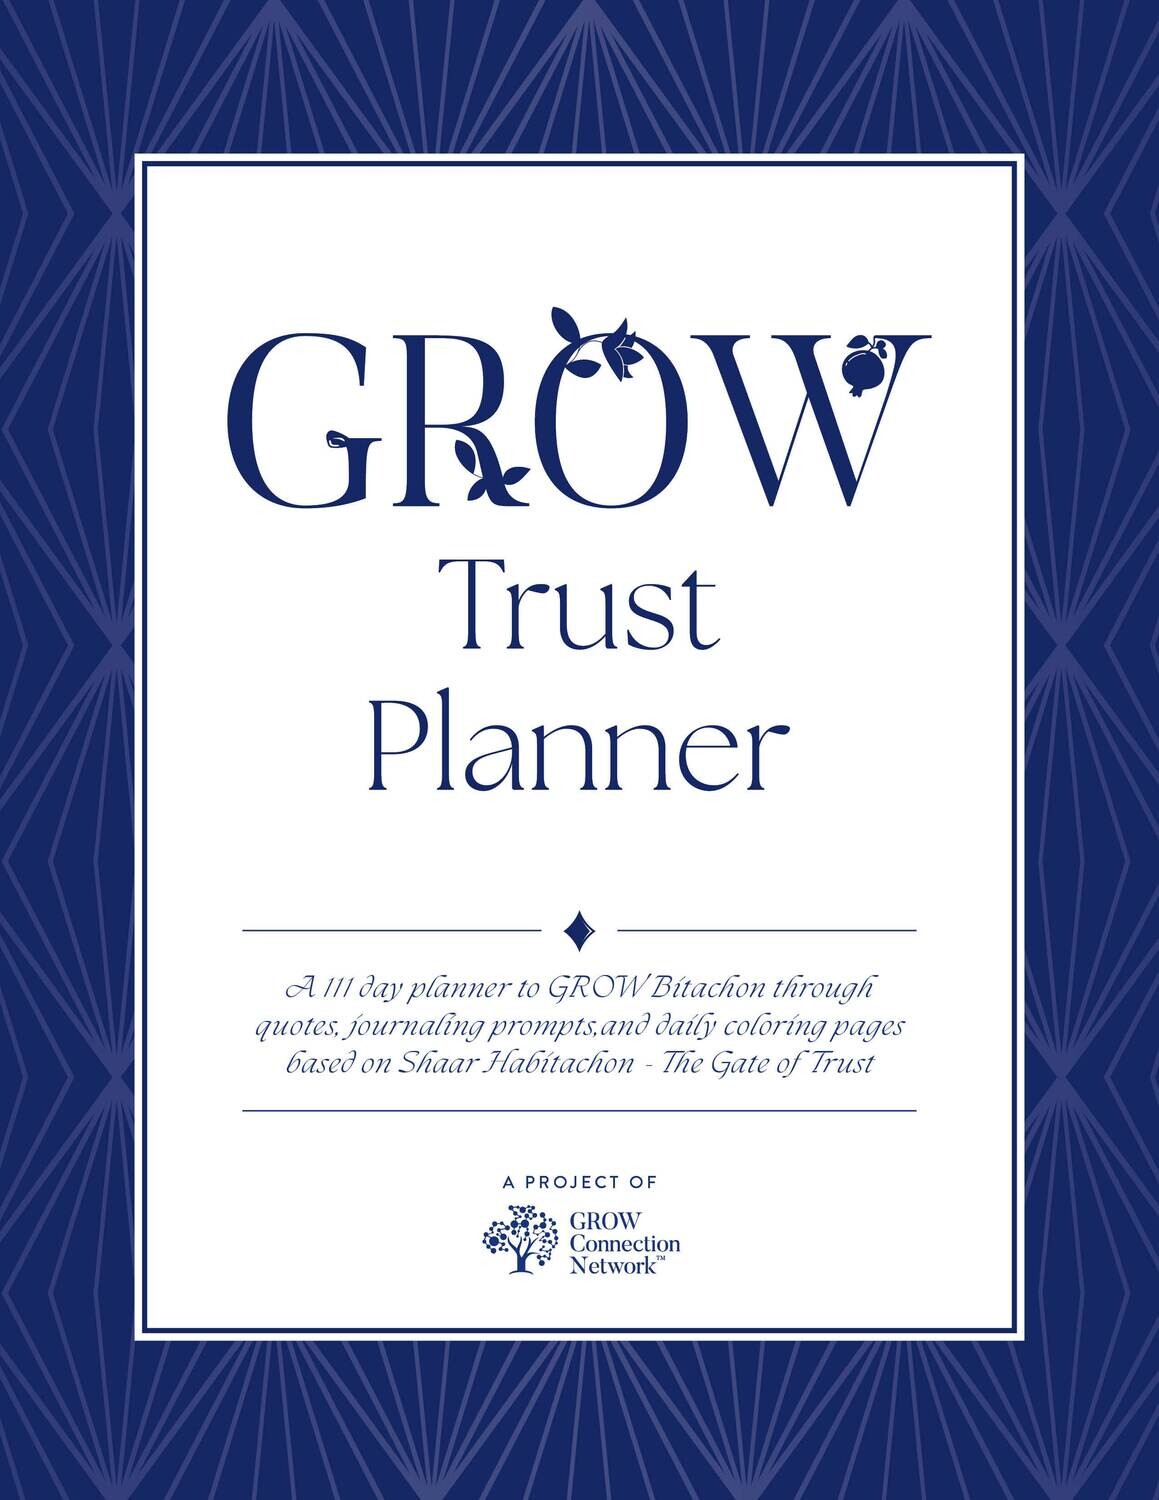 GROW Trust Planner